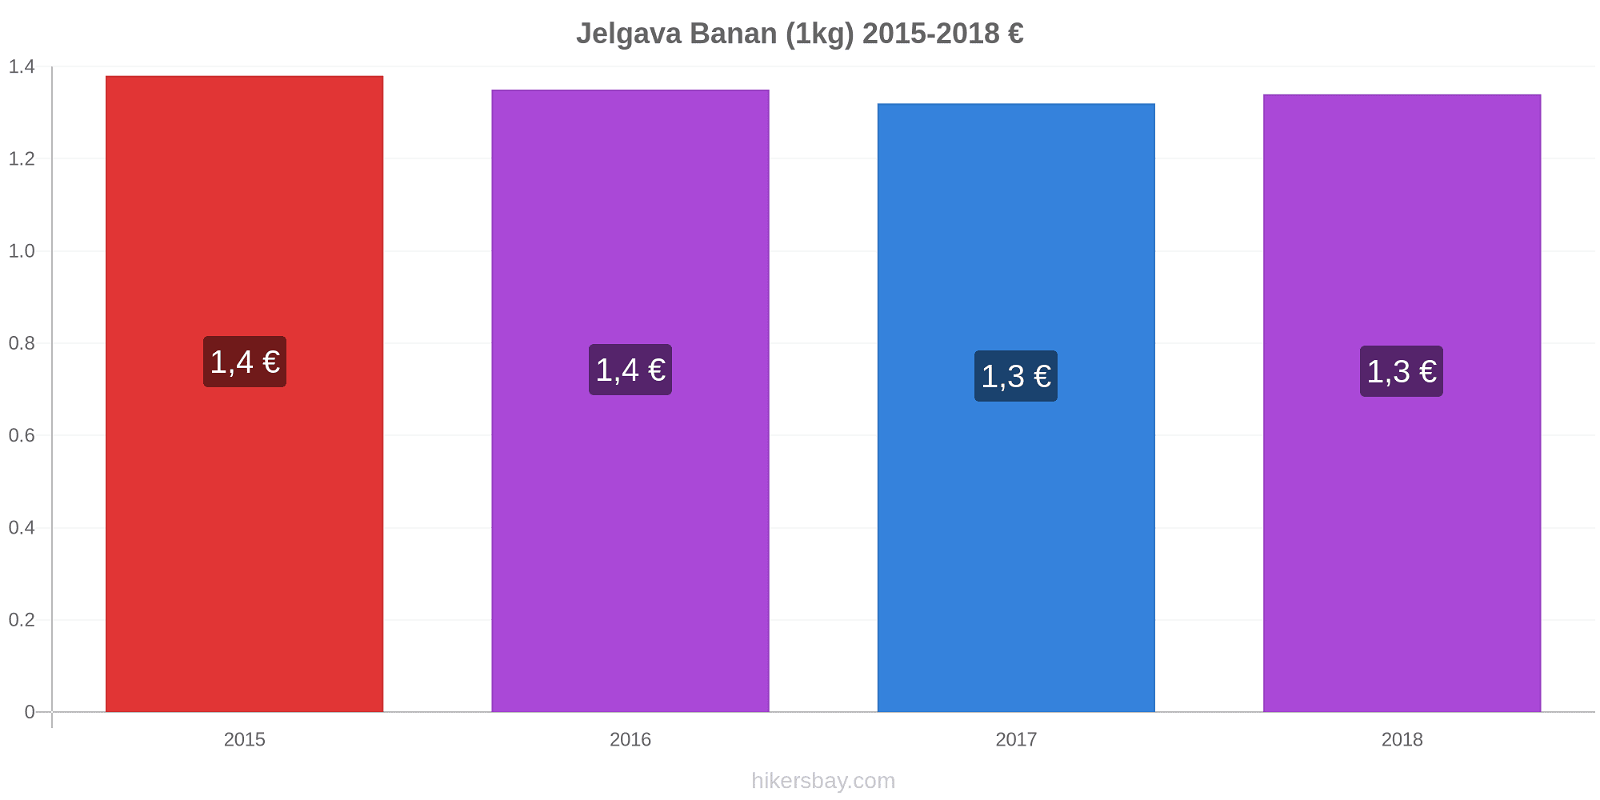 Jelgava prisændringer Banan (1kg) hikersbay.com